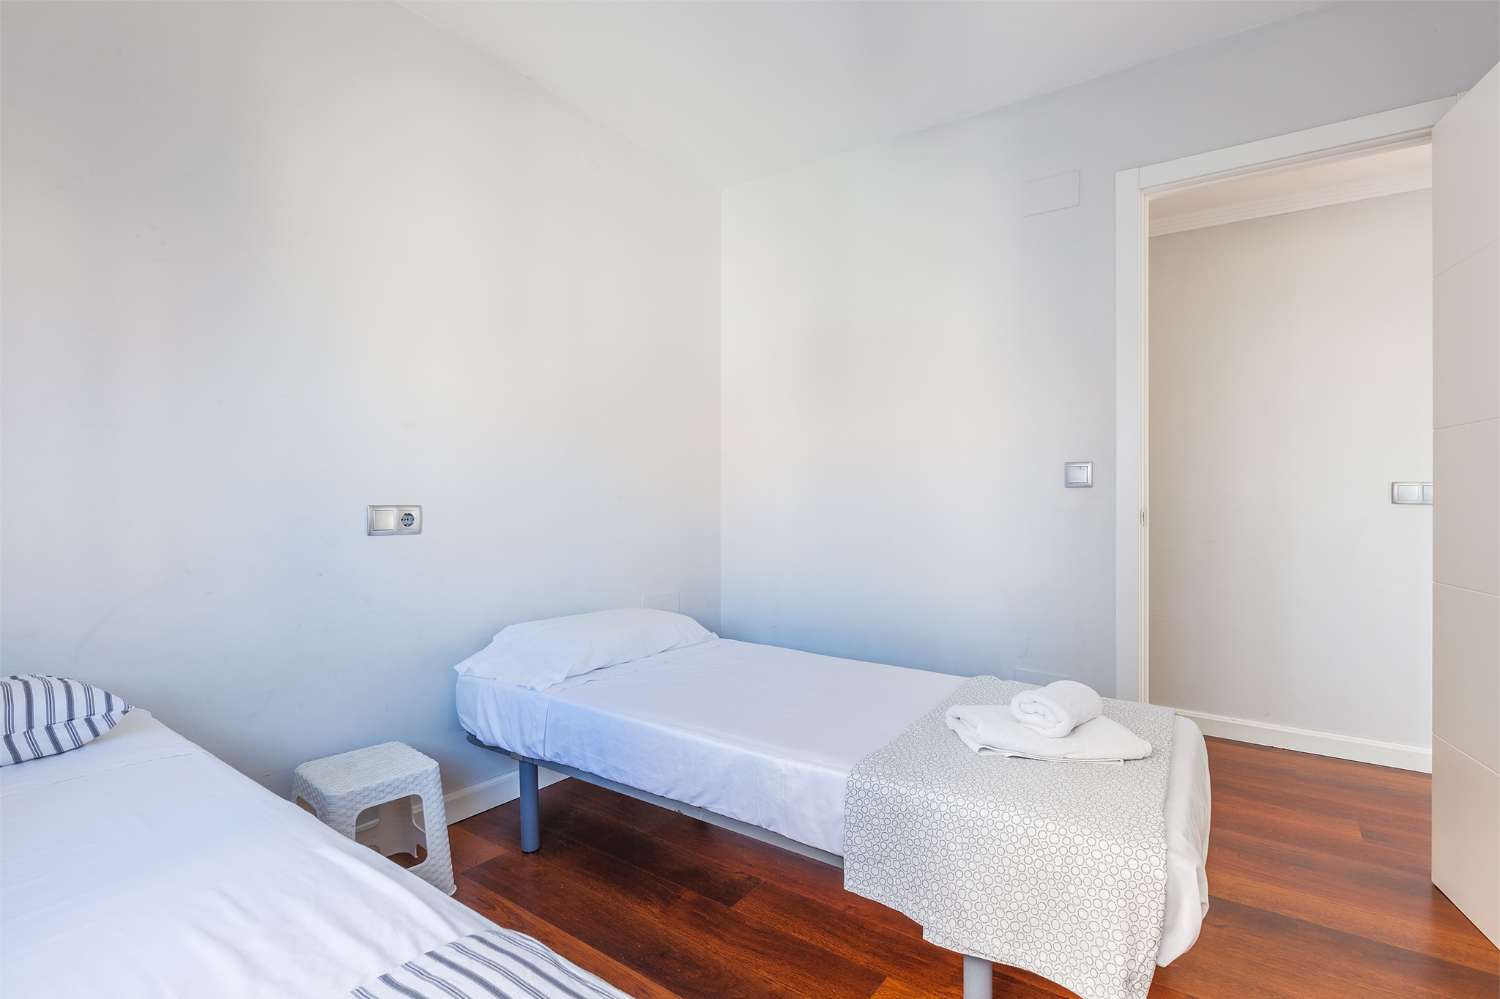 Apartamento dos dormitorios primera linea de playa centro de Torre del Mar, para invierno